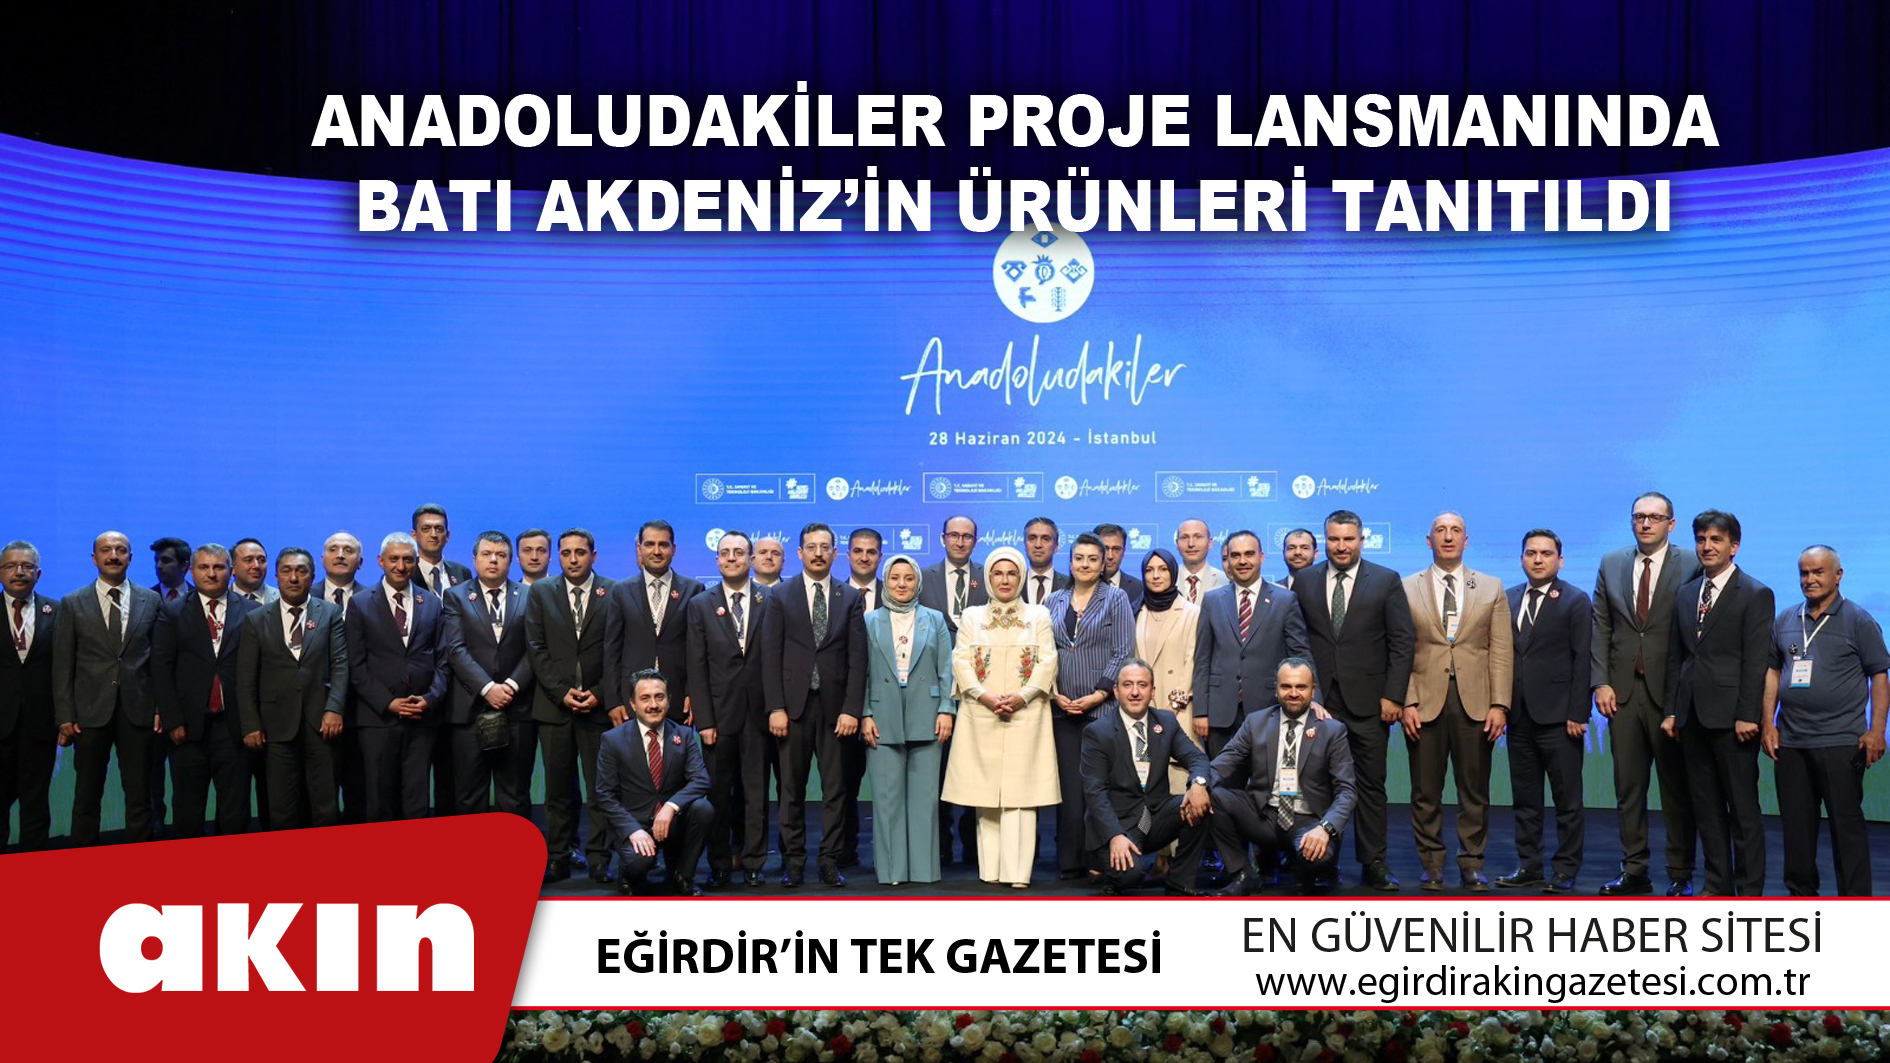 Anadoludakiler Proje Lansmanında Batı Akdeniz’in Ürünleri Tanıtıldı